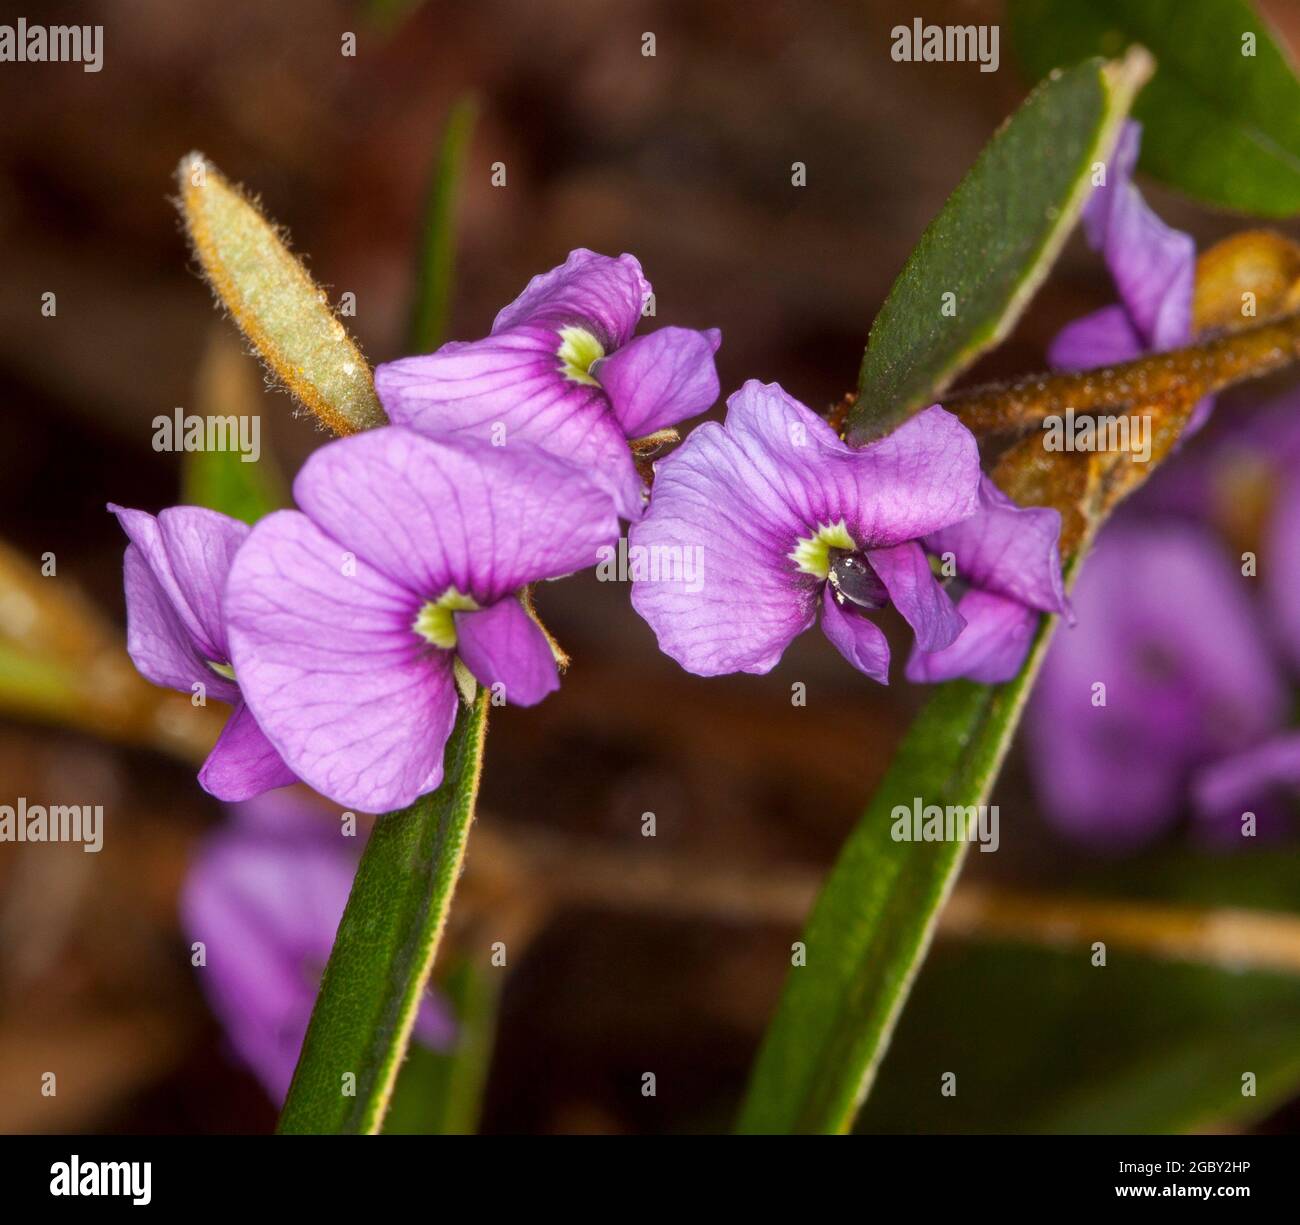 Bunte Wildblumen, leuchtend violette Blüten und dunkelgrüne Blätter von Hovea acutifolia, Purple Pea Bush, einem australischen einheimischen Strauch Stockfoto